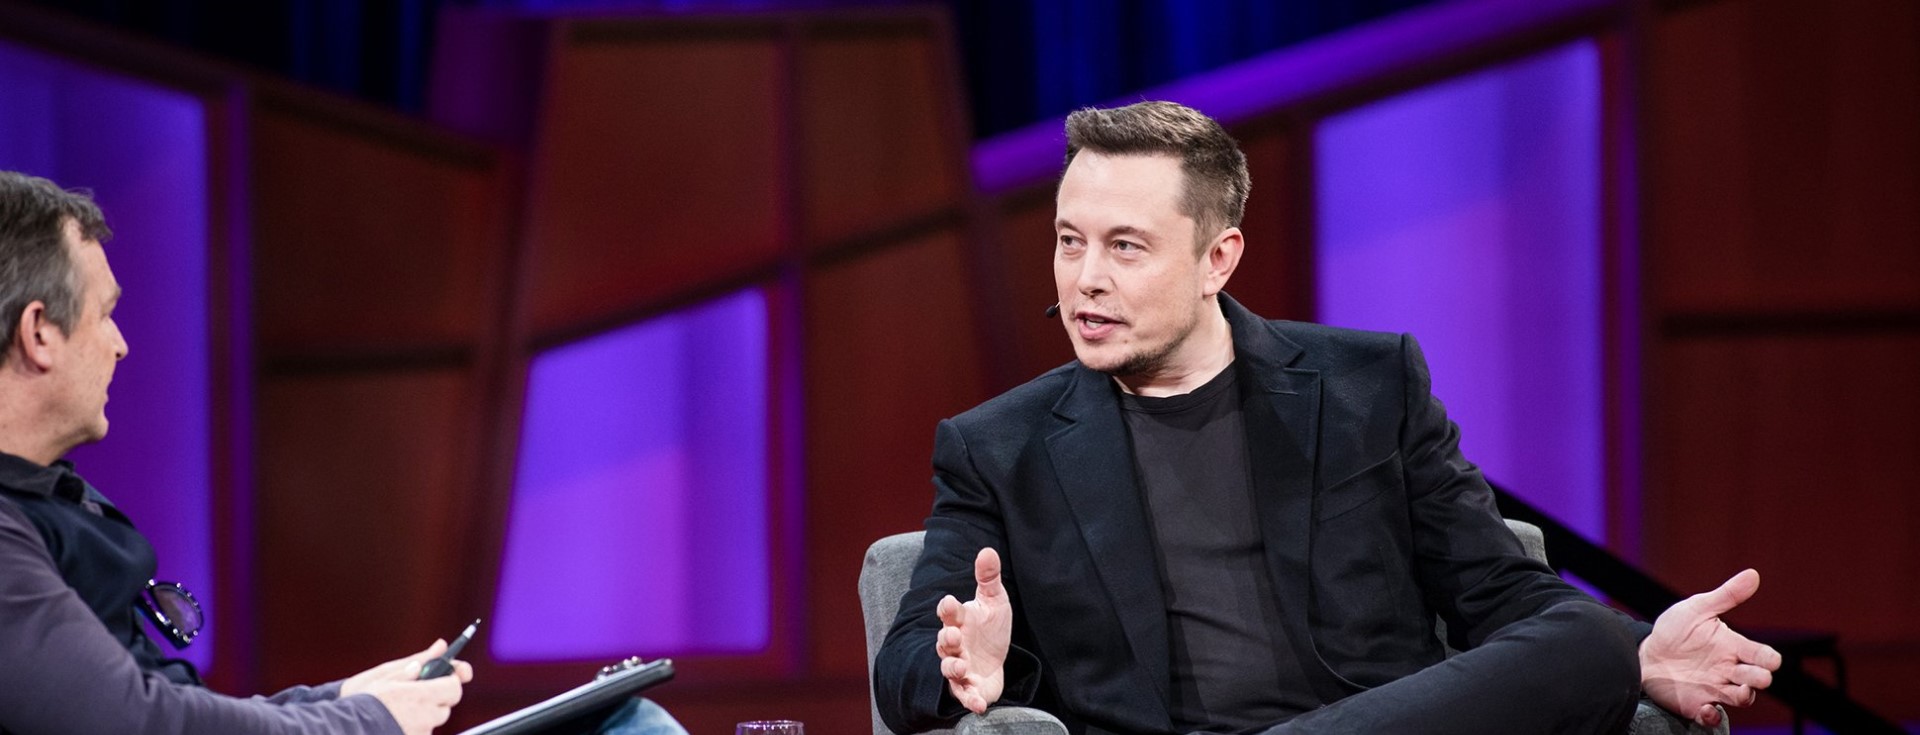 Elon Musk'ın En Sevdiği ve En Sık Sorduğu Mülakat Sorusu